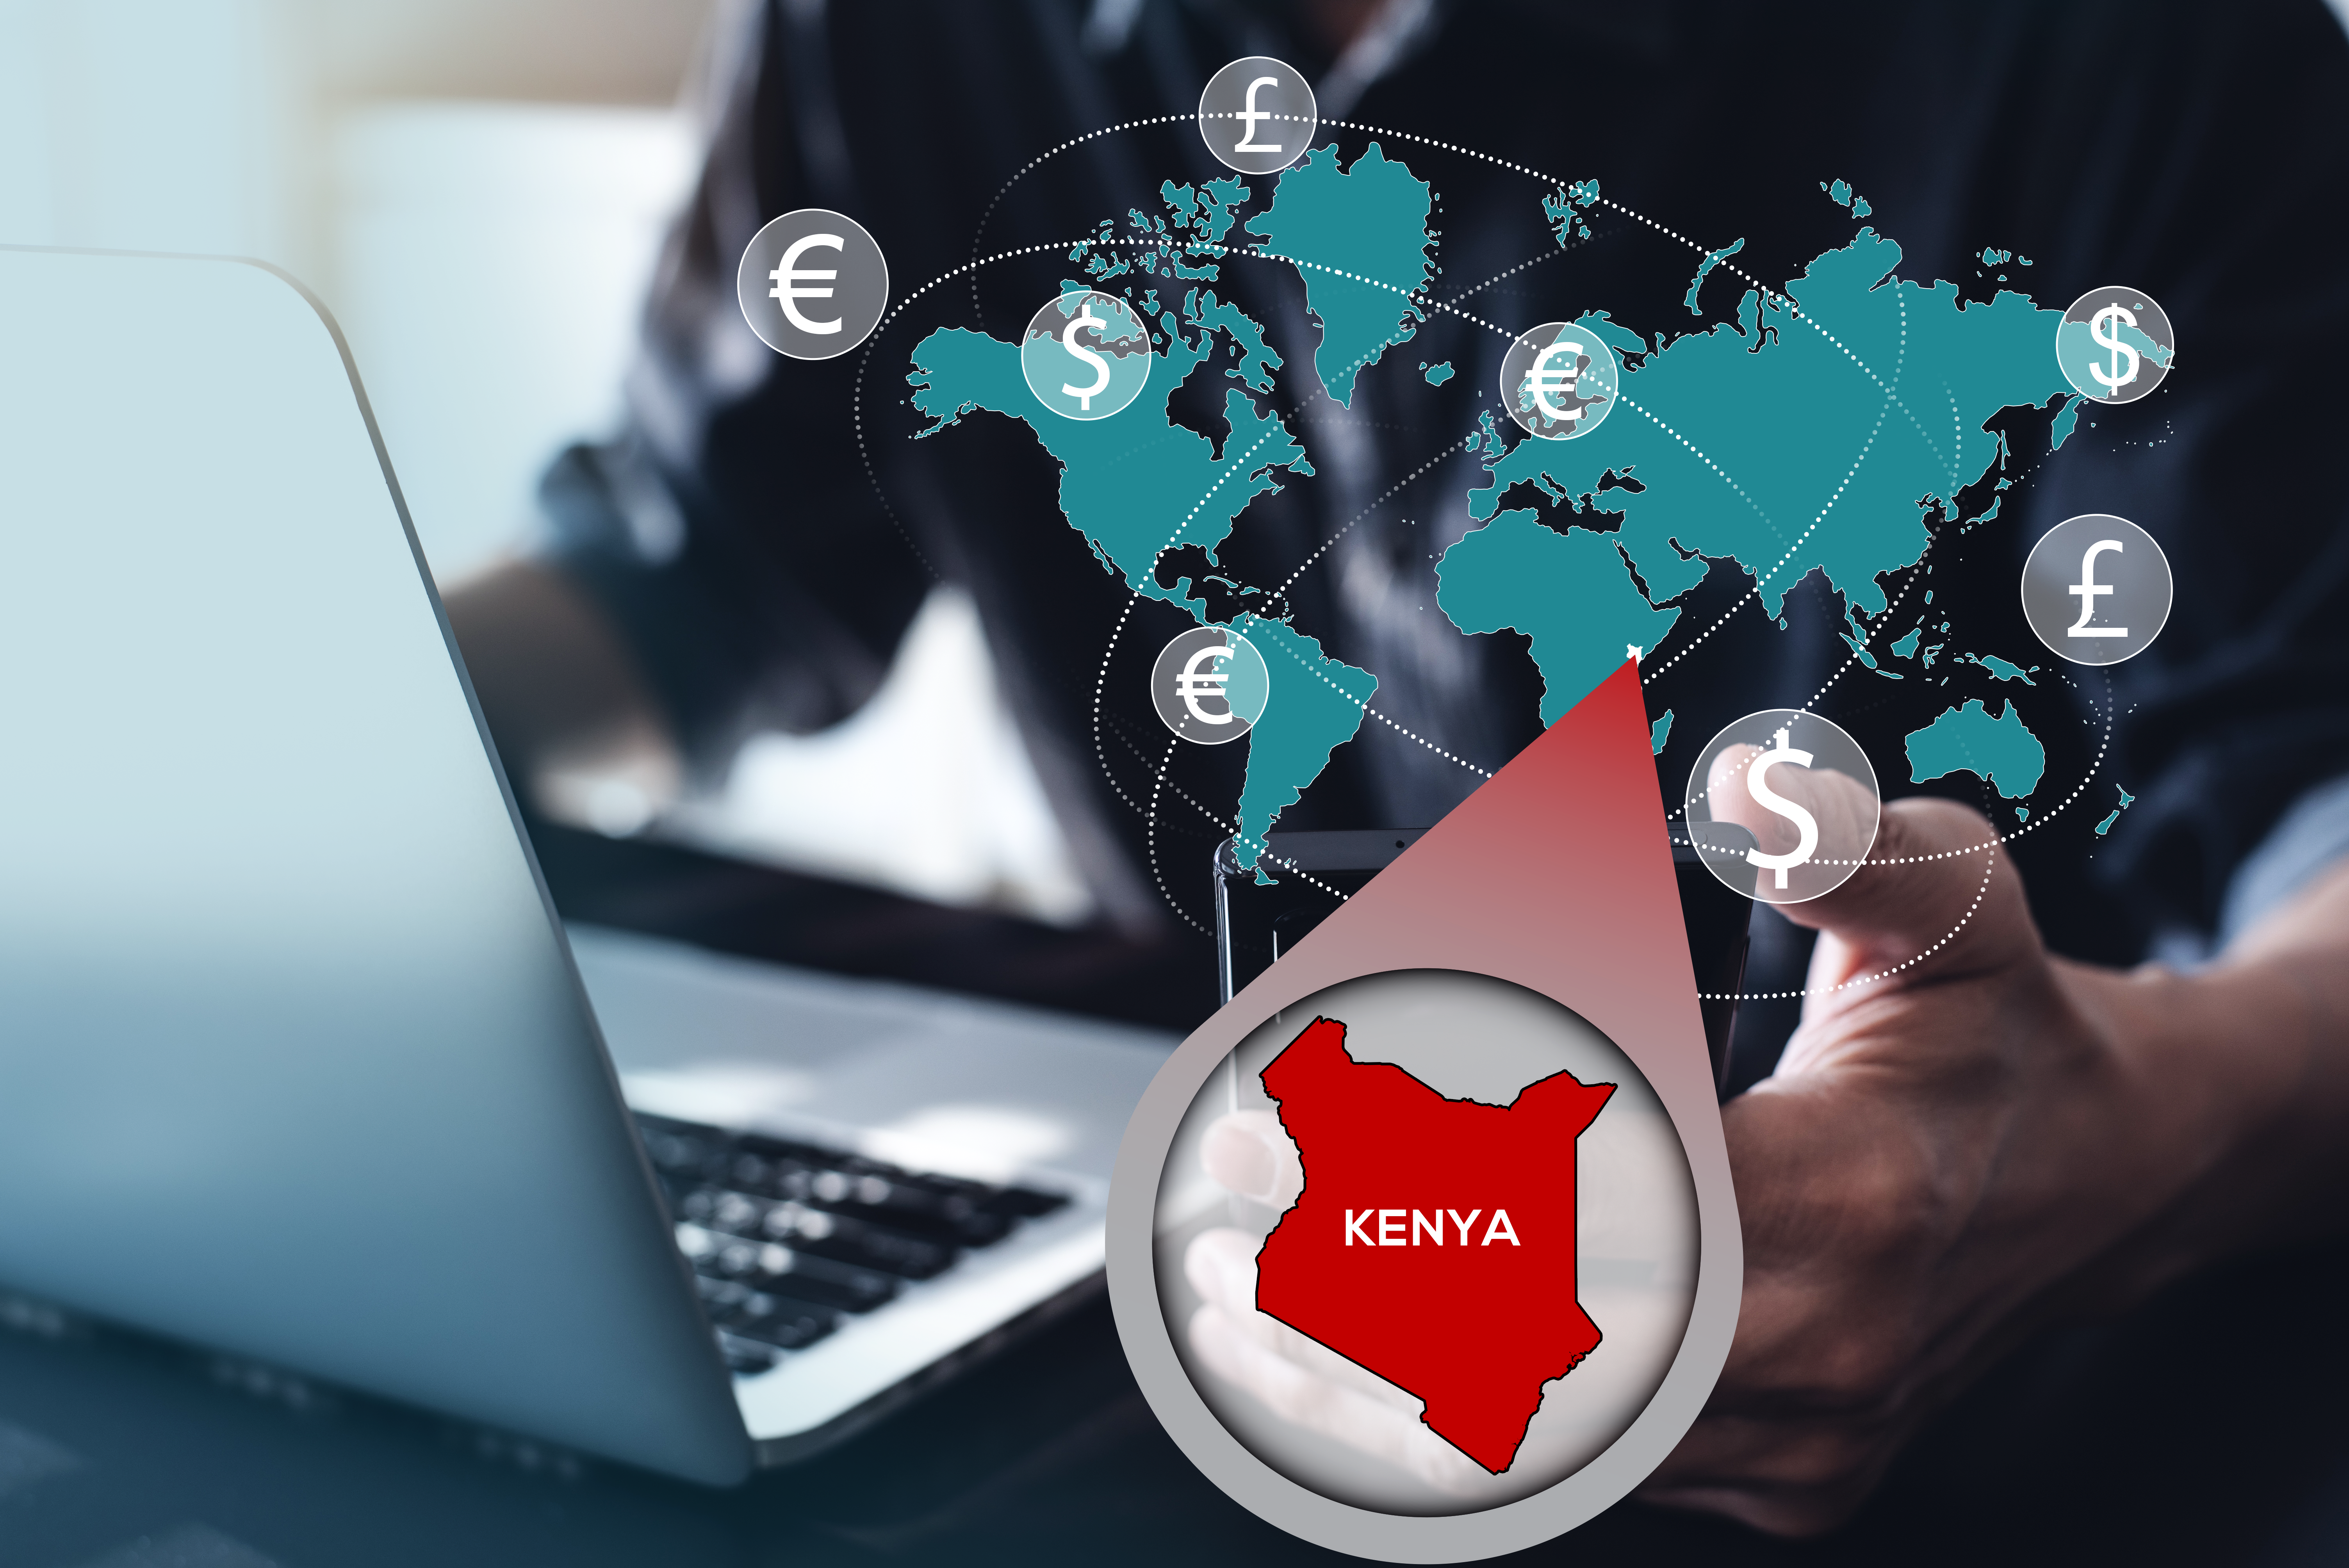 Les moyens les plus simples pour envoyer de l’argent à votre famille et à vos amis au Kenya 